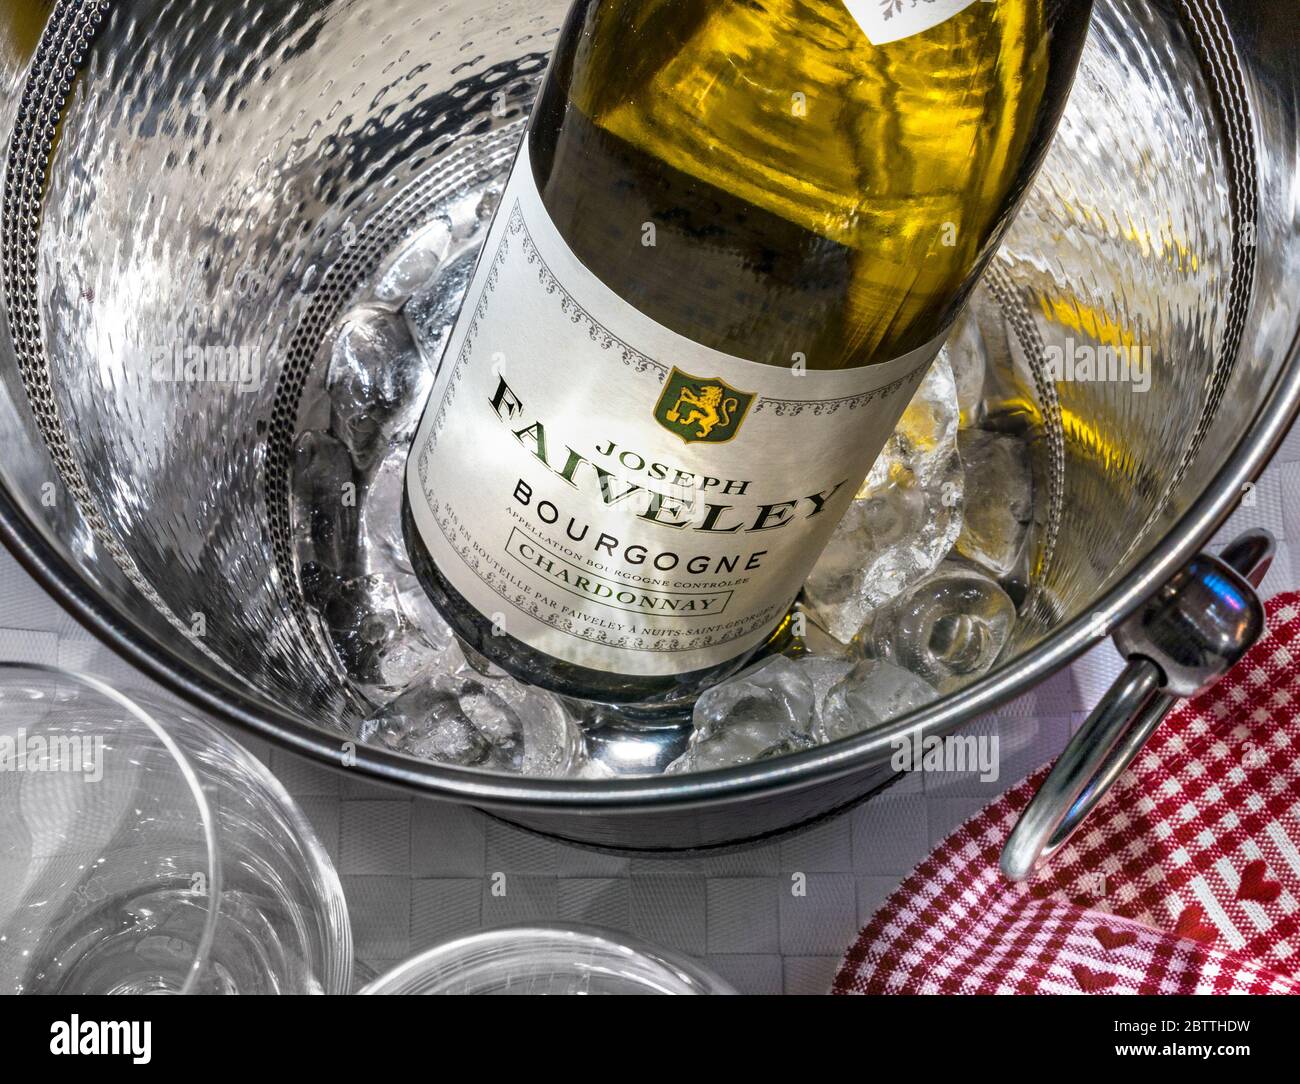 Joseph Faiveley blanc sec Chardonnay Bourgogne bouteille, fermer la vue sur l'étiquette du vin seau glacière avec de la glace, dans la salle de dégustation de vin situation Banque D'Images